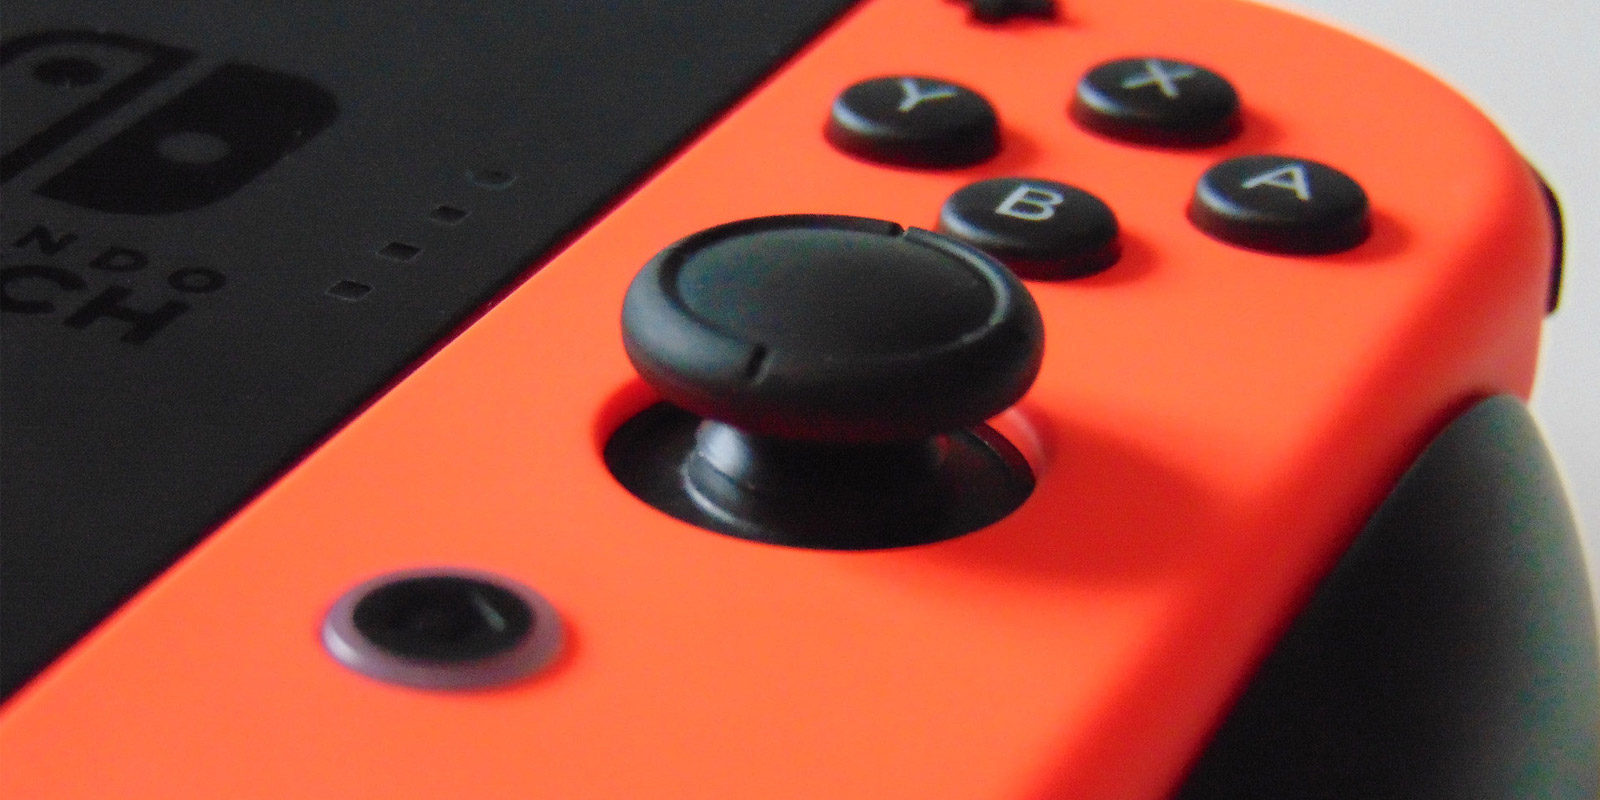 'Nintendo Switch': análisis de una consola híbrida que apunta a revolucionar el mercado de videojuegos